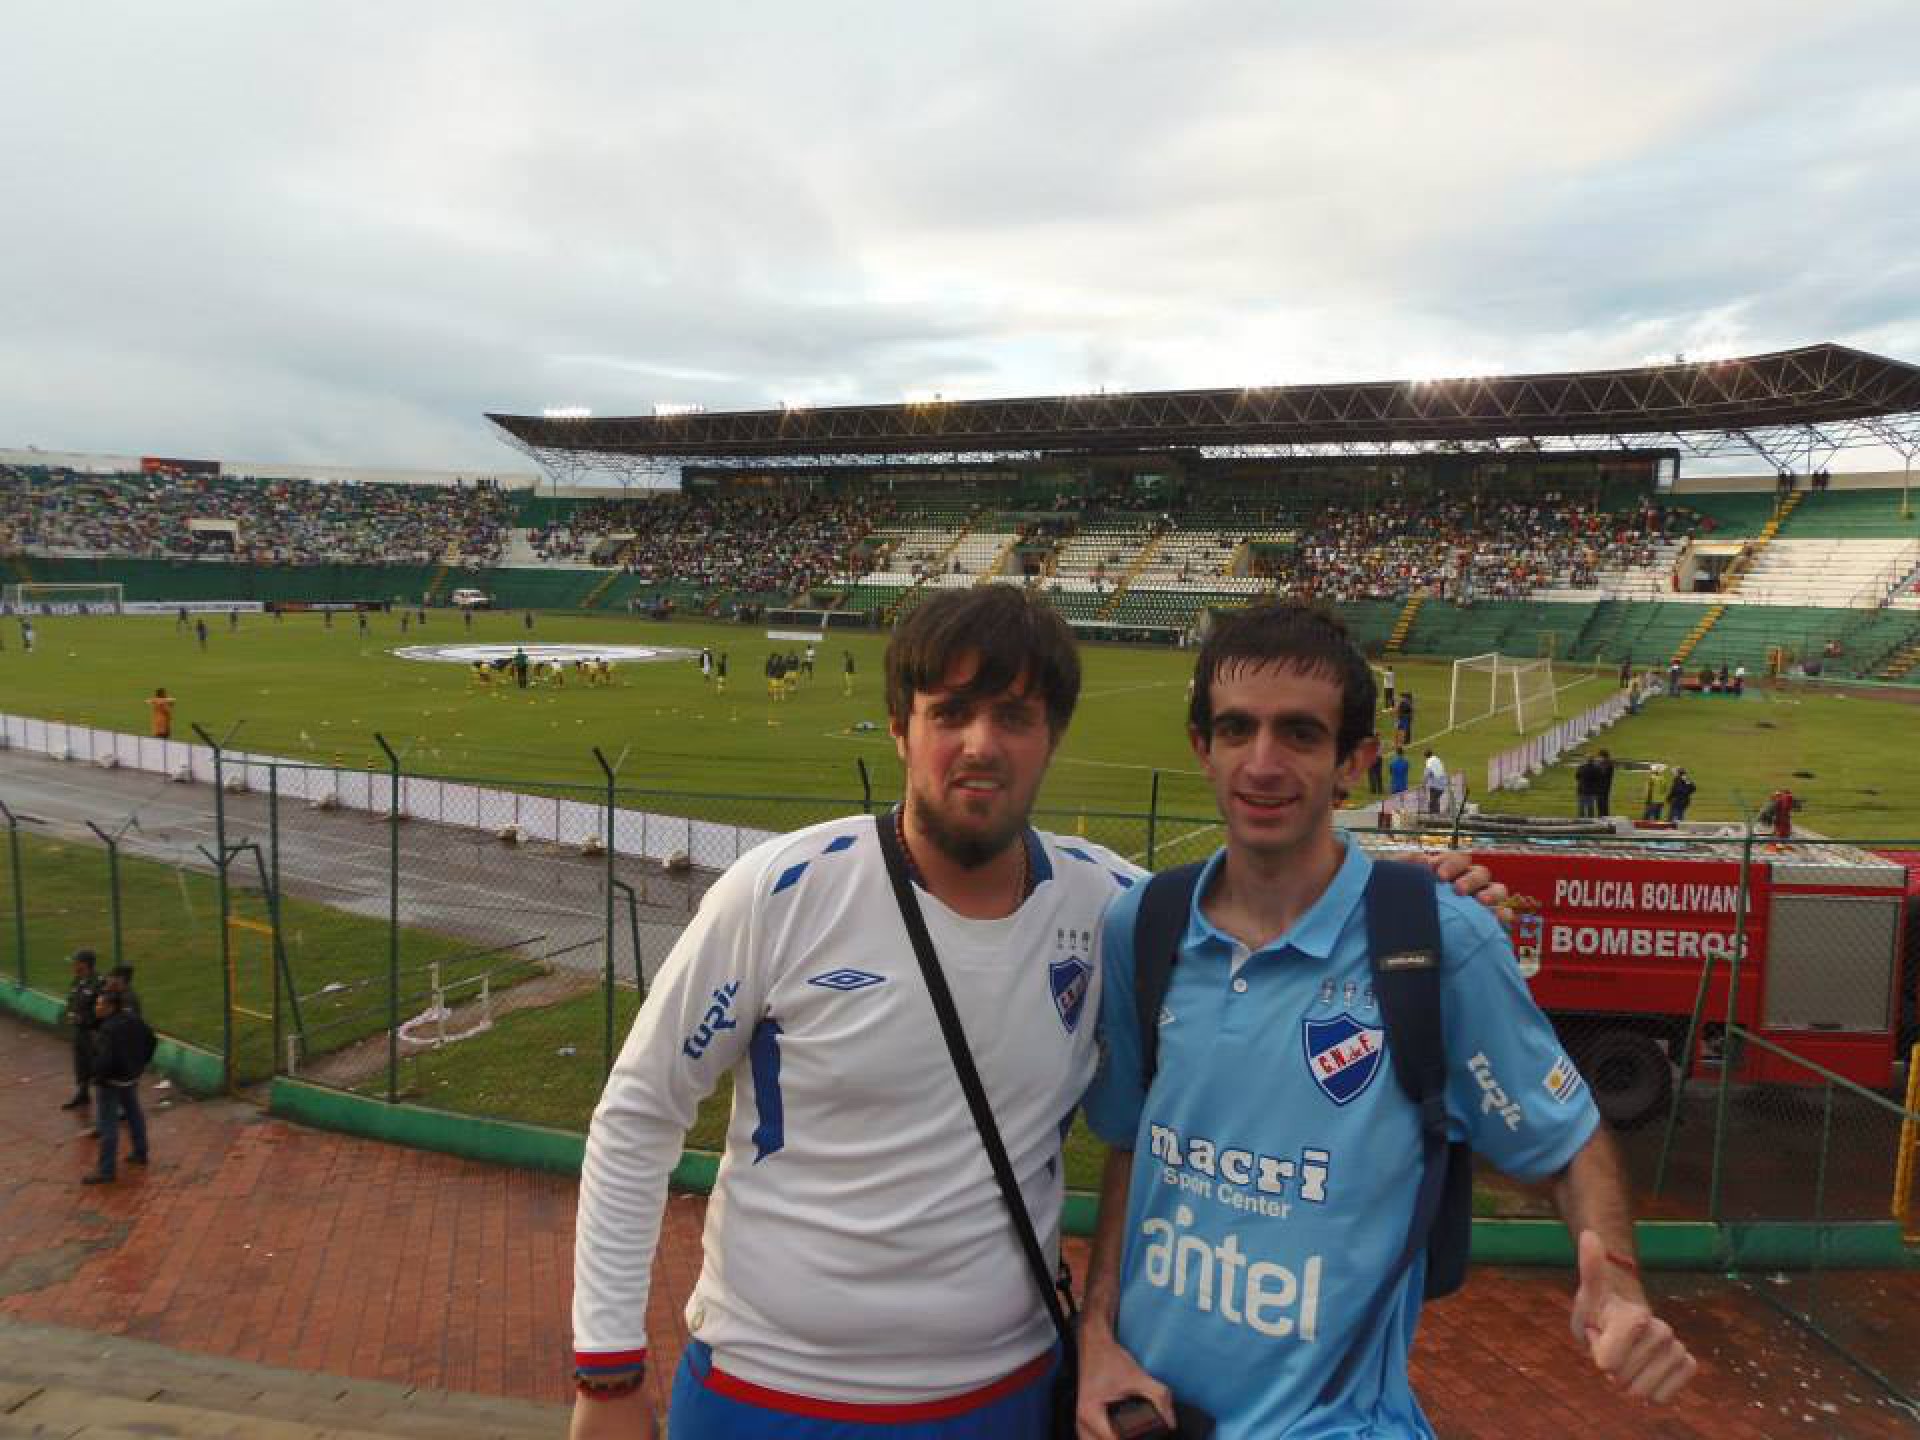 Irmãos Alejandro e Daniel Cabrera, que viajam pelo continente acompanhando o Nacional do Uruguai, em jogo no estádio Ramon Tahuichi, em Santa Cruz de la Sierra, na Bolívia(Foto: Acervo pessoal)